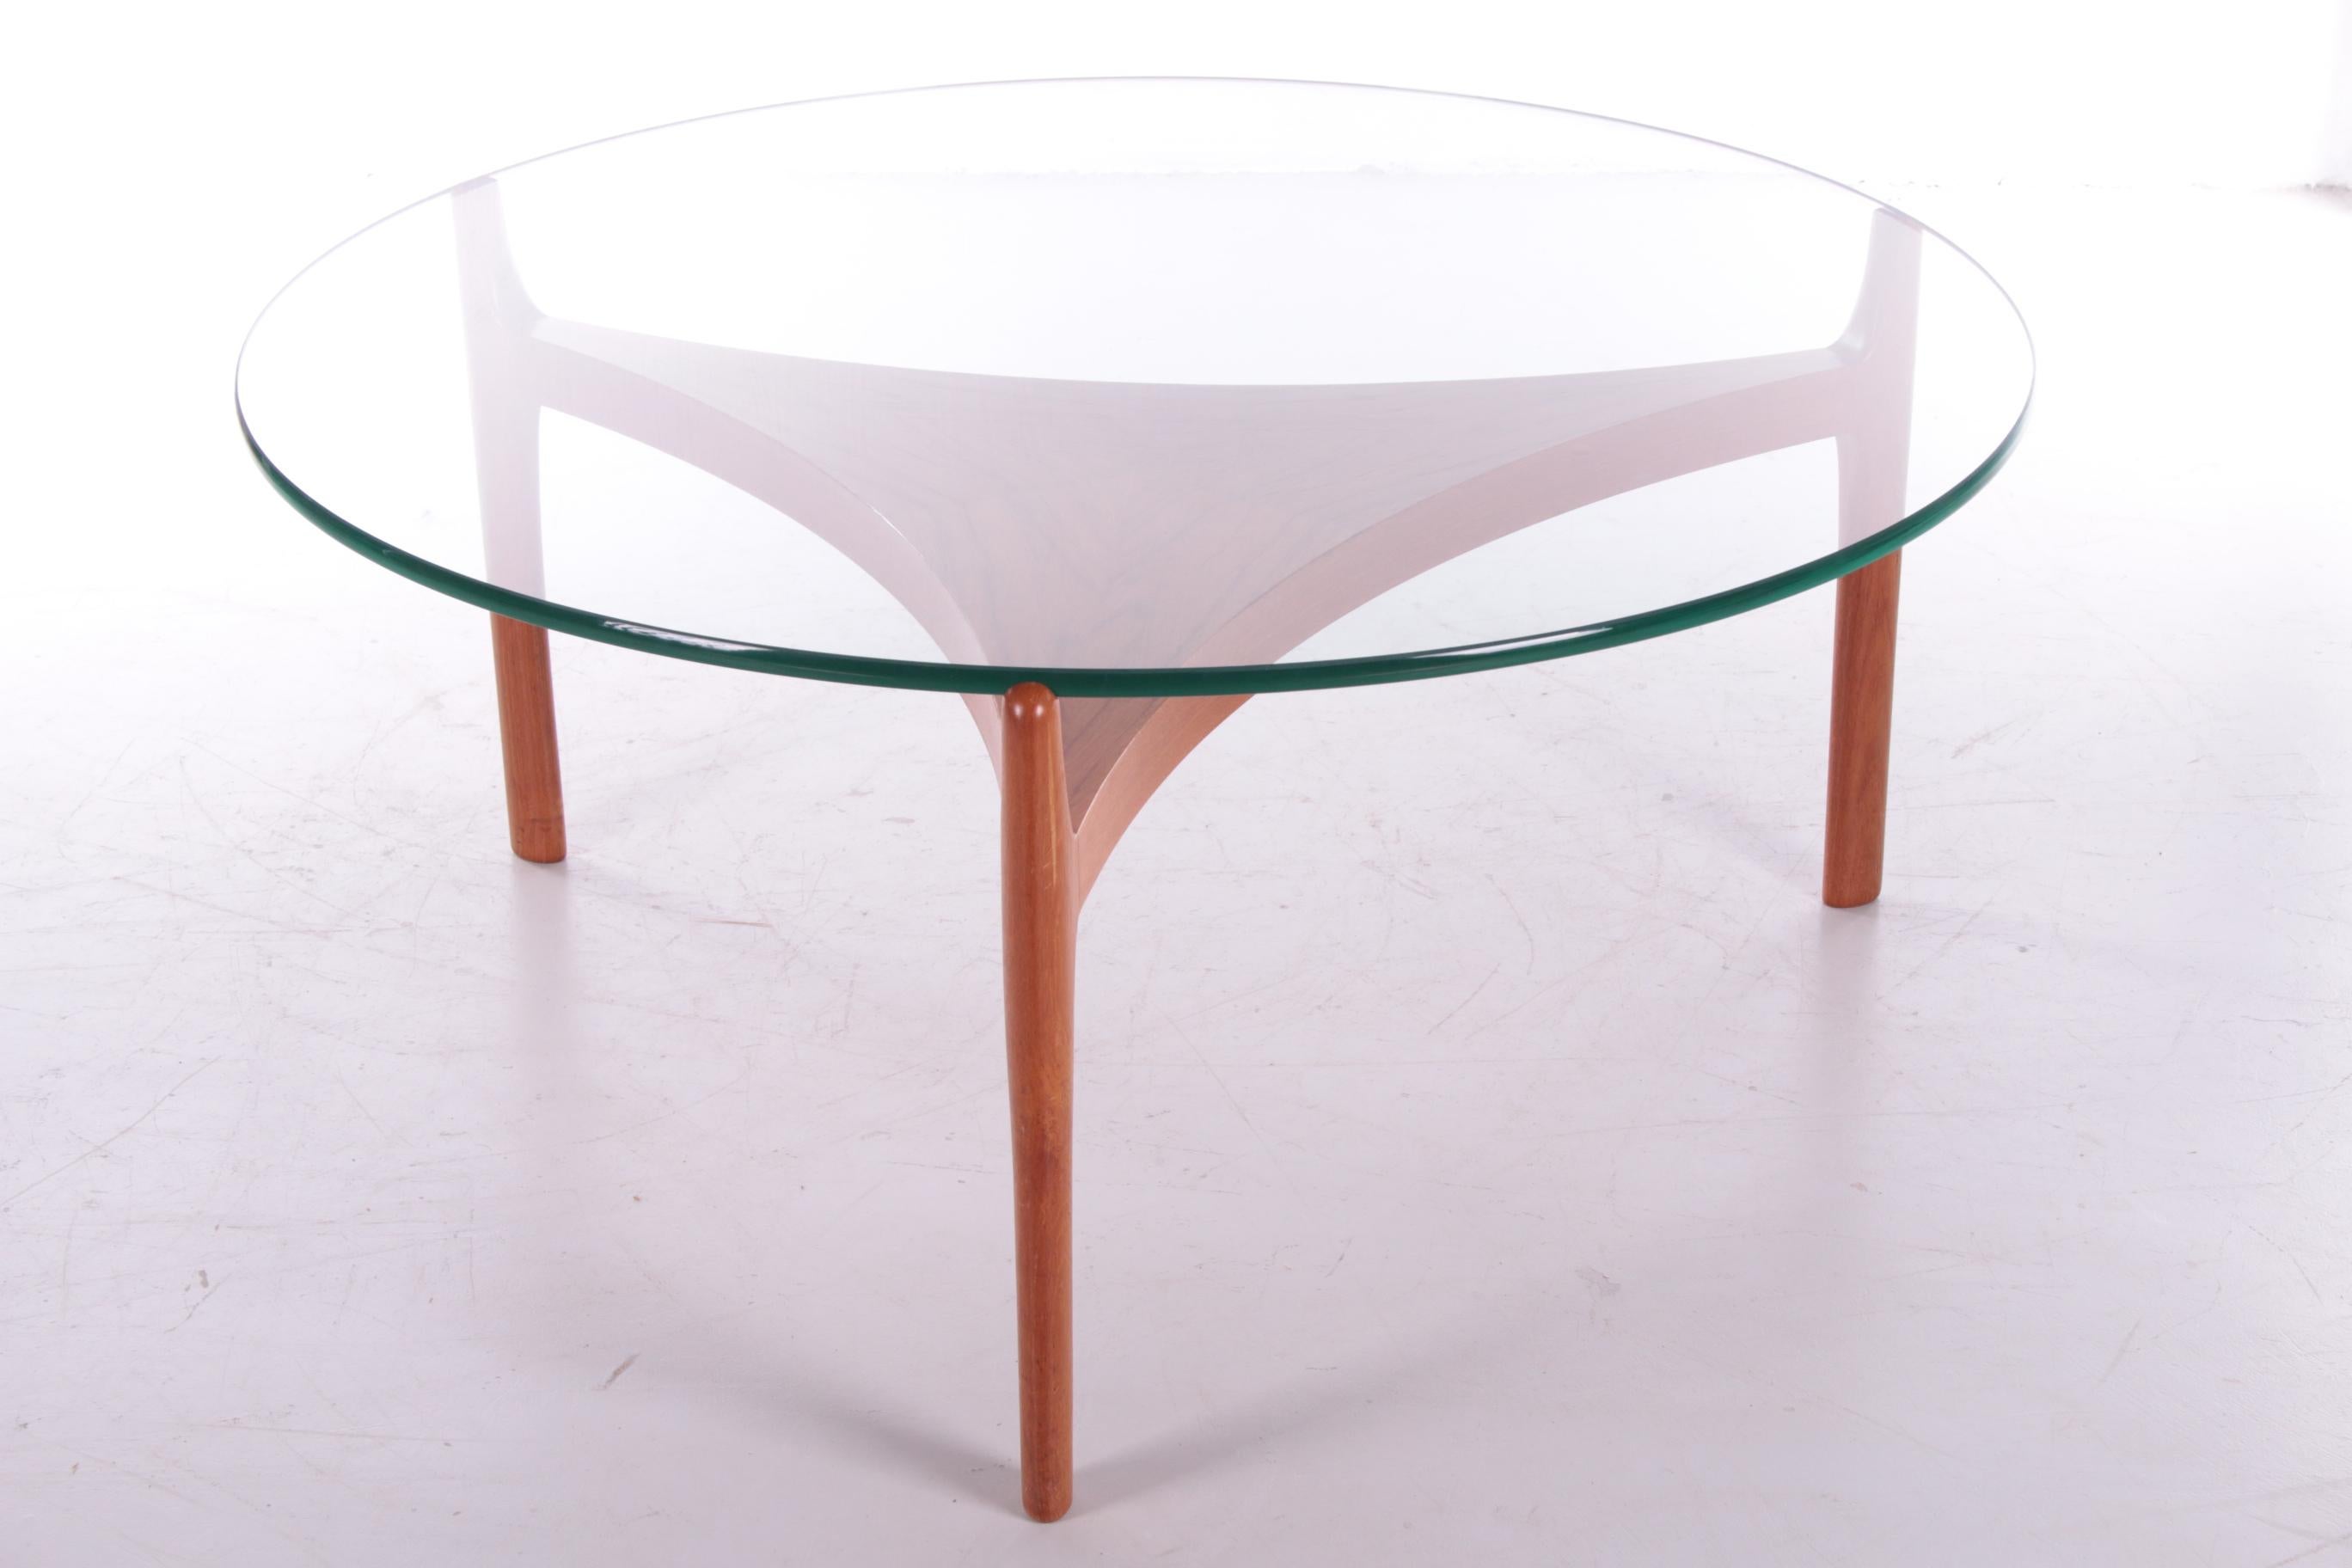 Magnifique table basse en teck conçue par Sven Ellekaer 

de Christian Linneberg Mobelfabrik, Danemark, en 1960.

L'élégante base est en teck courbé avec un plateau en verre épais. 

La combinaison de ces deux matériaux donne à la table un aspect